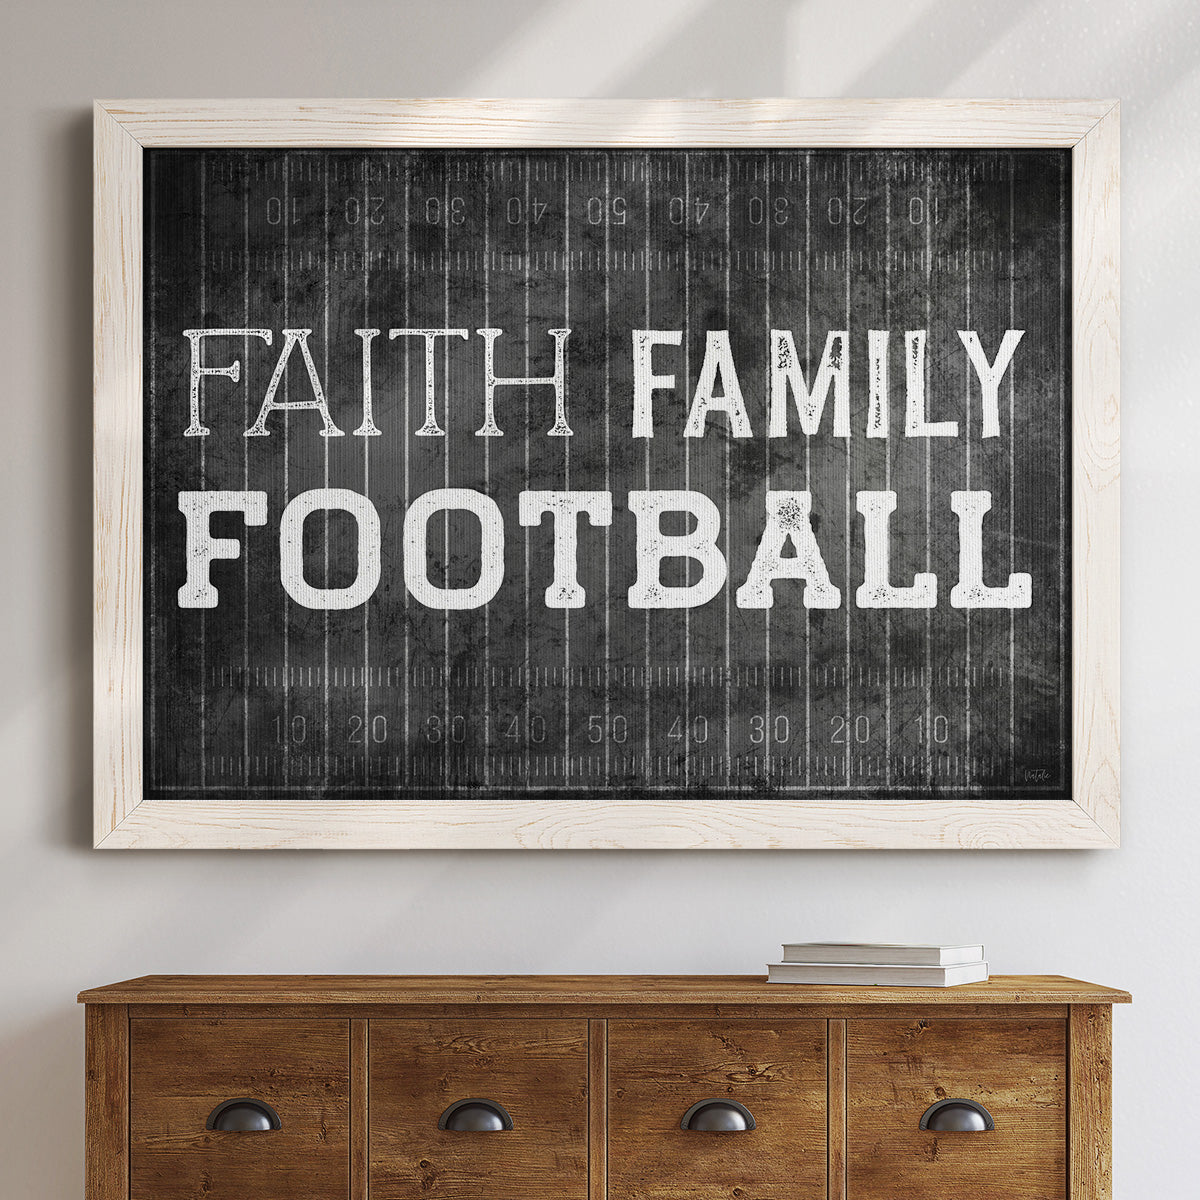 Faith Family Football-Premium Framed Canvas - Ready to Hang